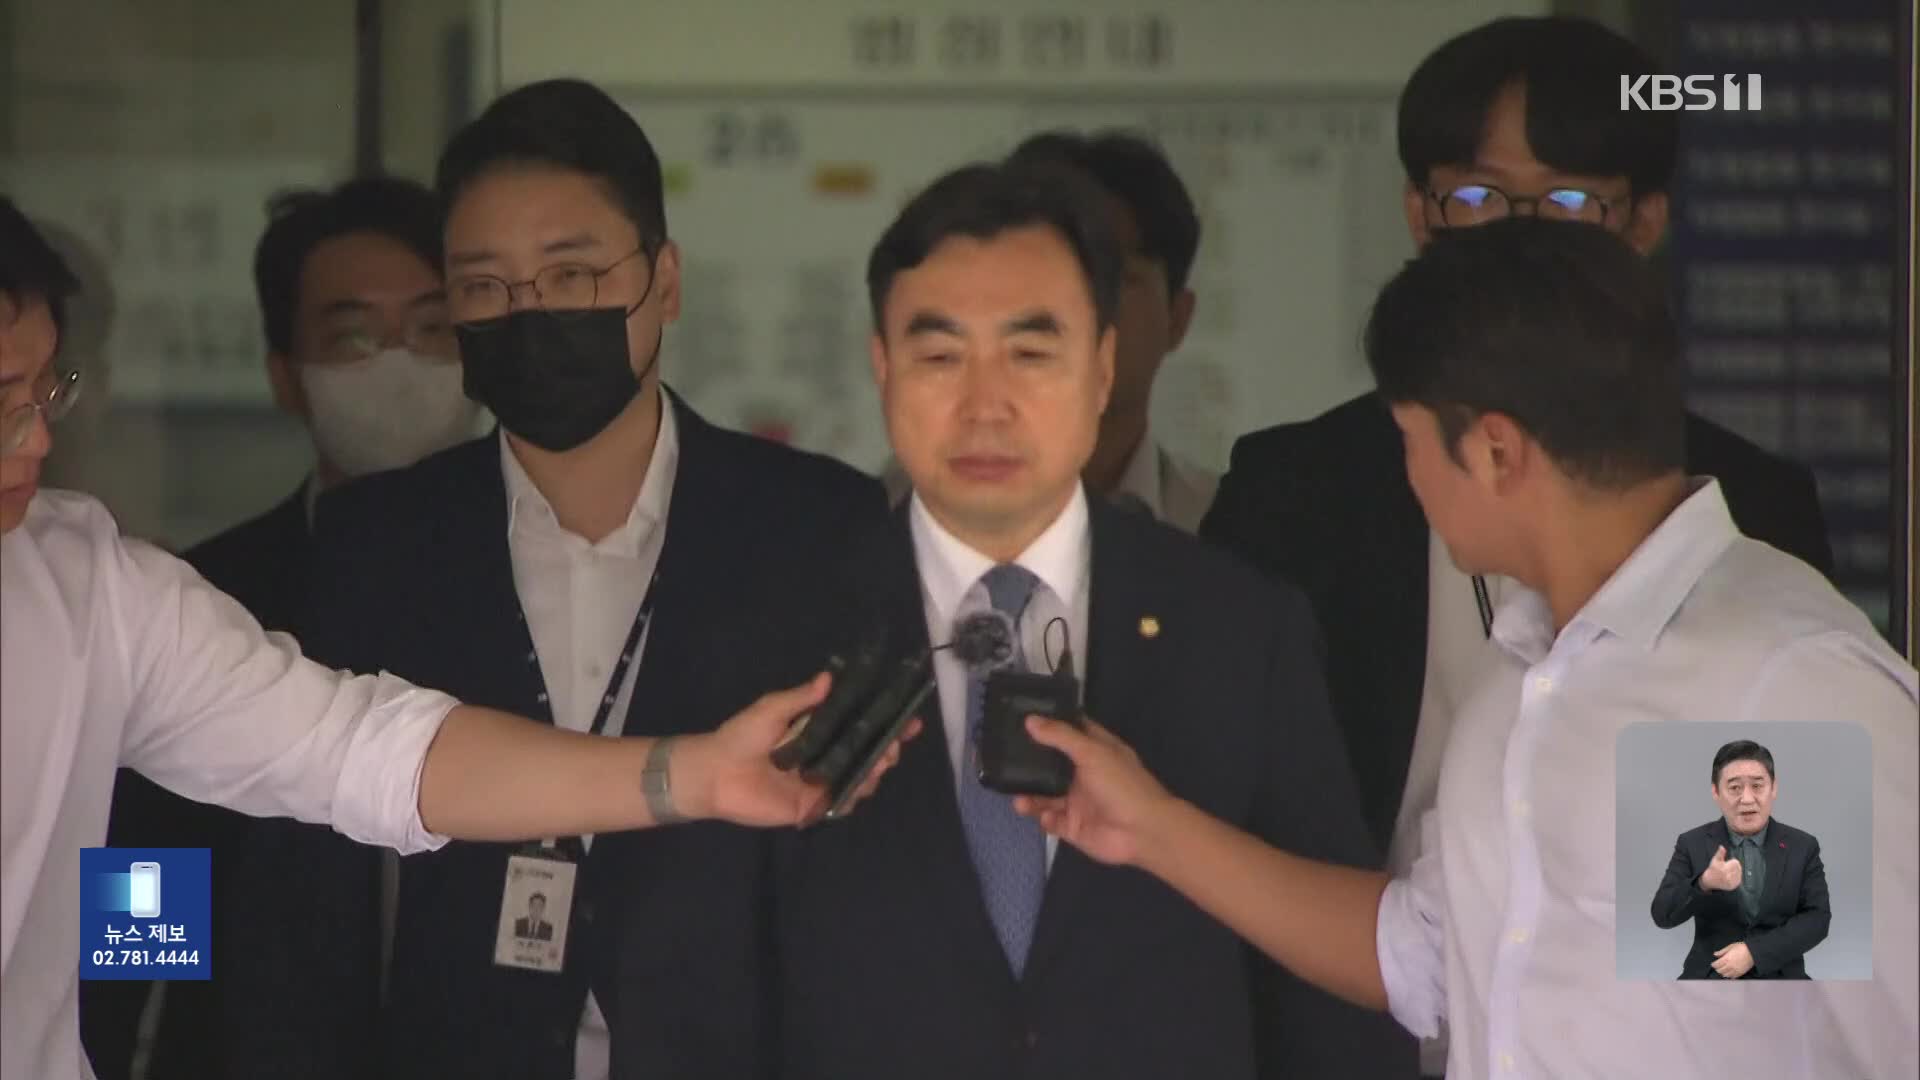 ‘돈 봉투 의혹’ 윤관석 징역 2년…“정당 민주주의 위협”